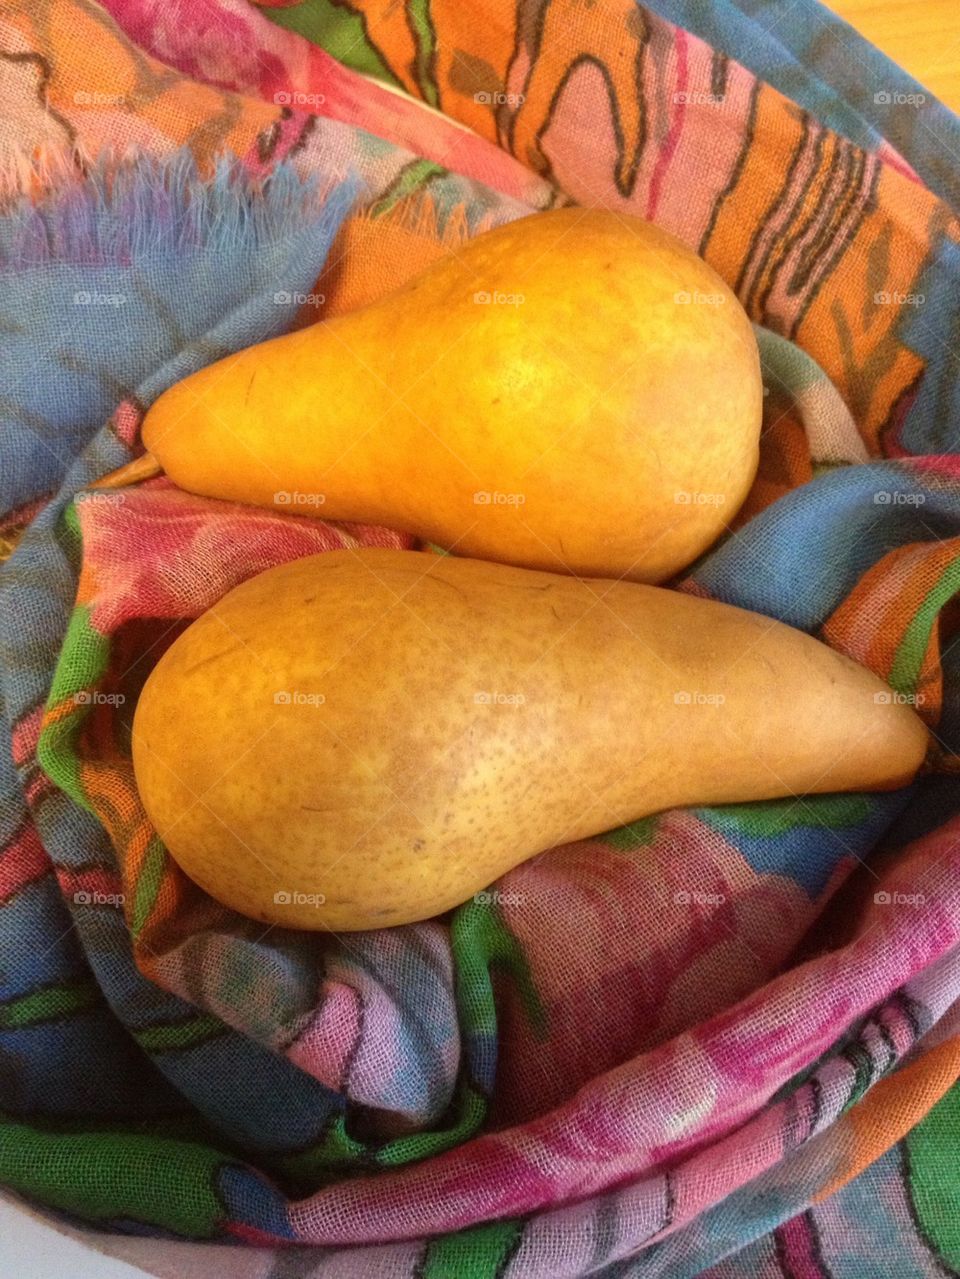 Pair of pears